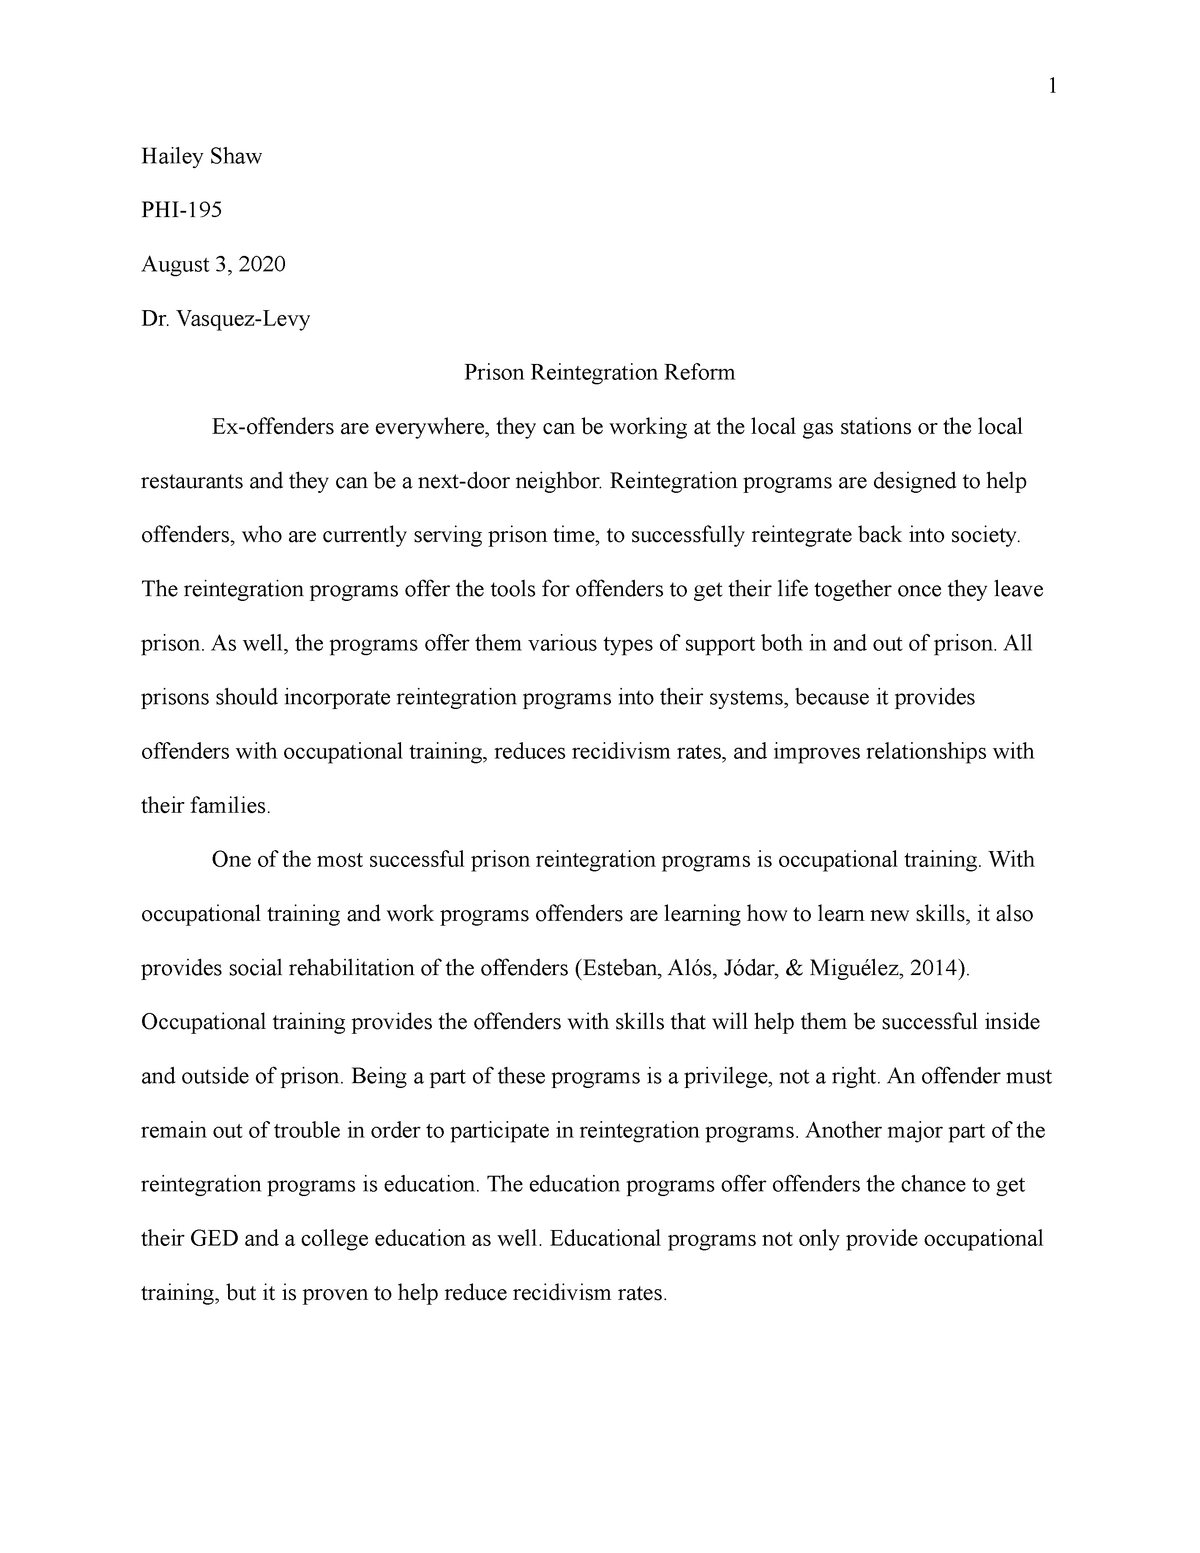 phi 105 persuasive essay final draft